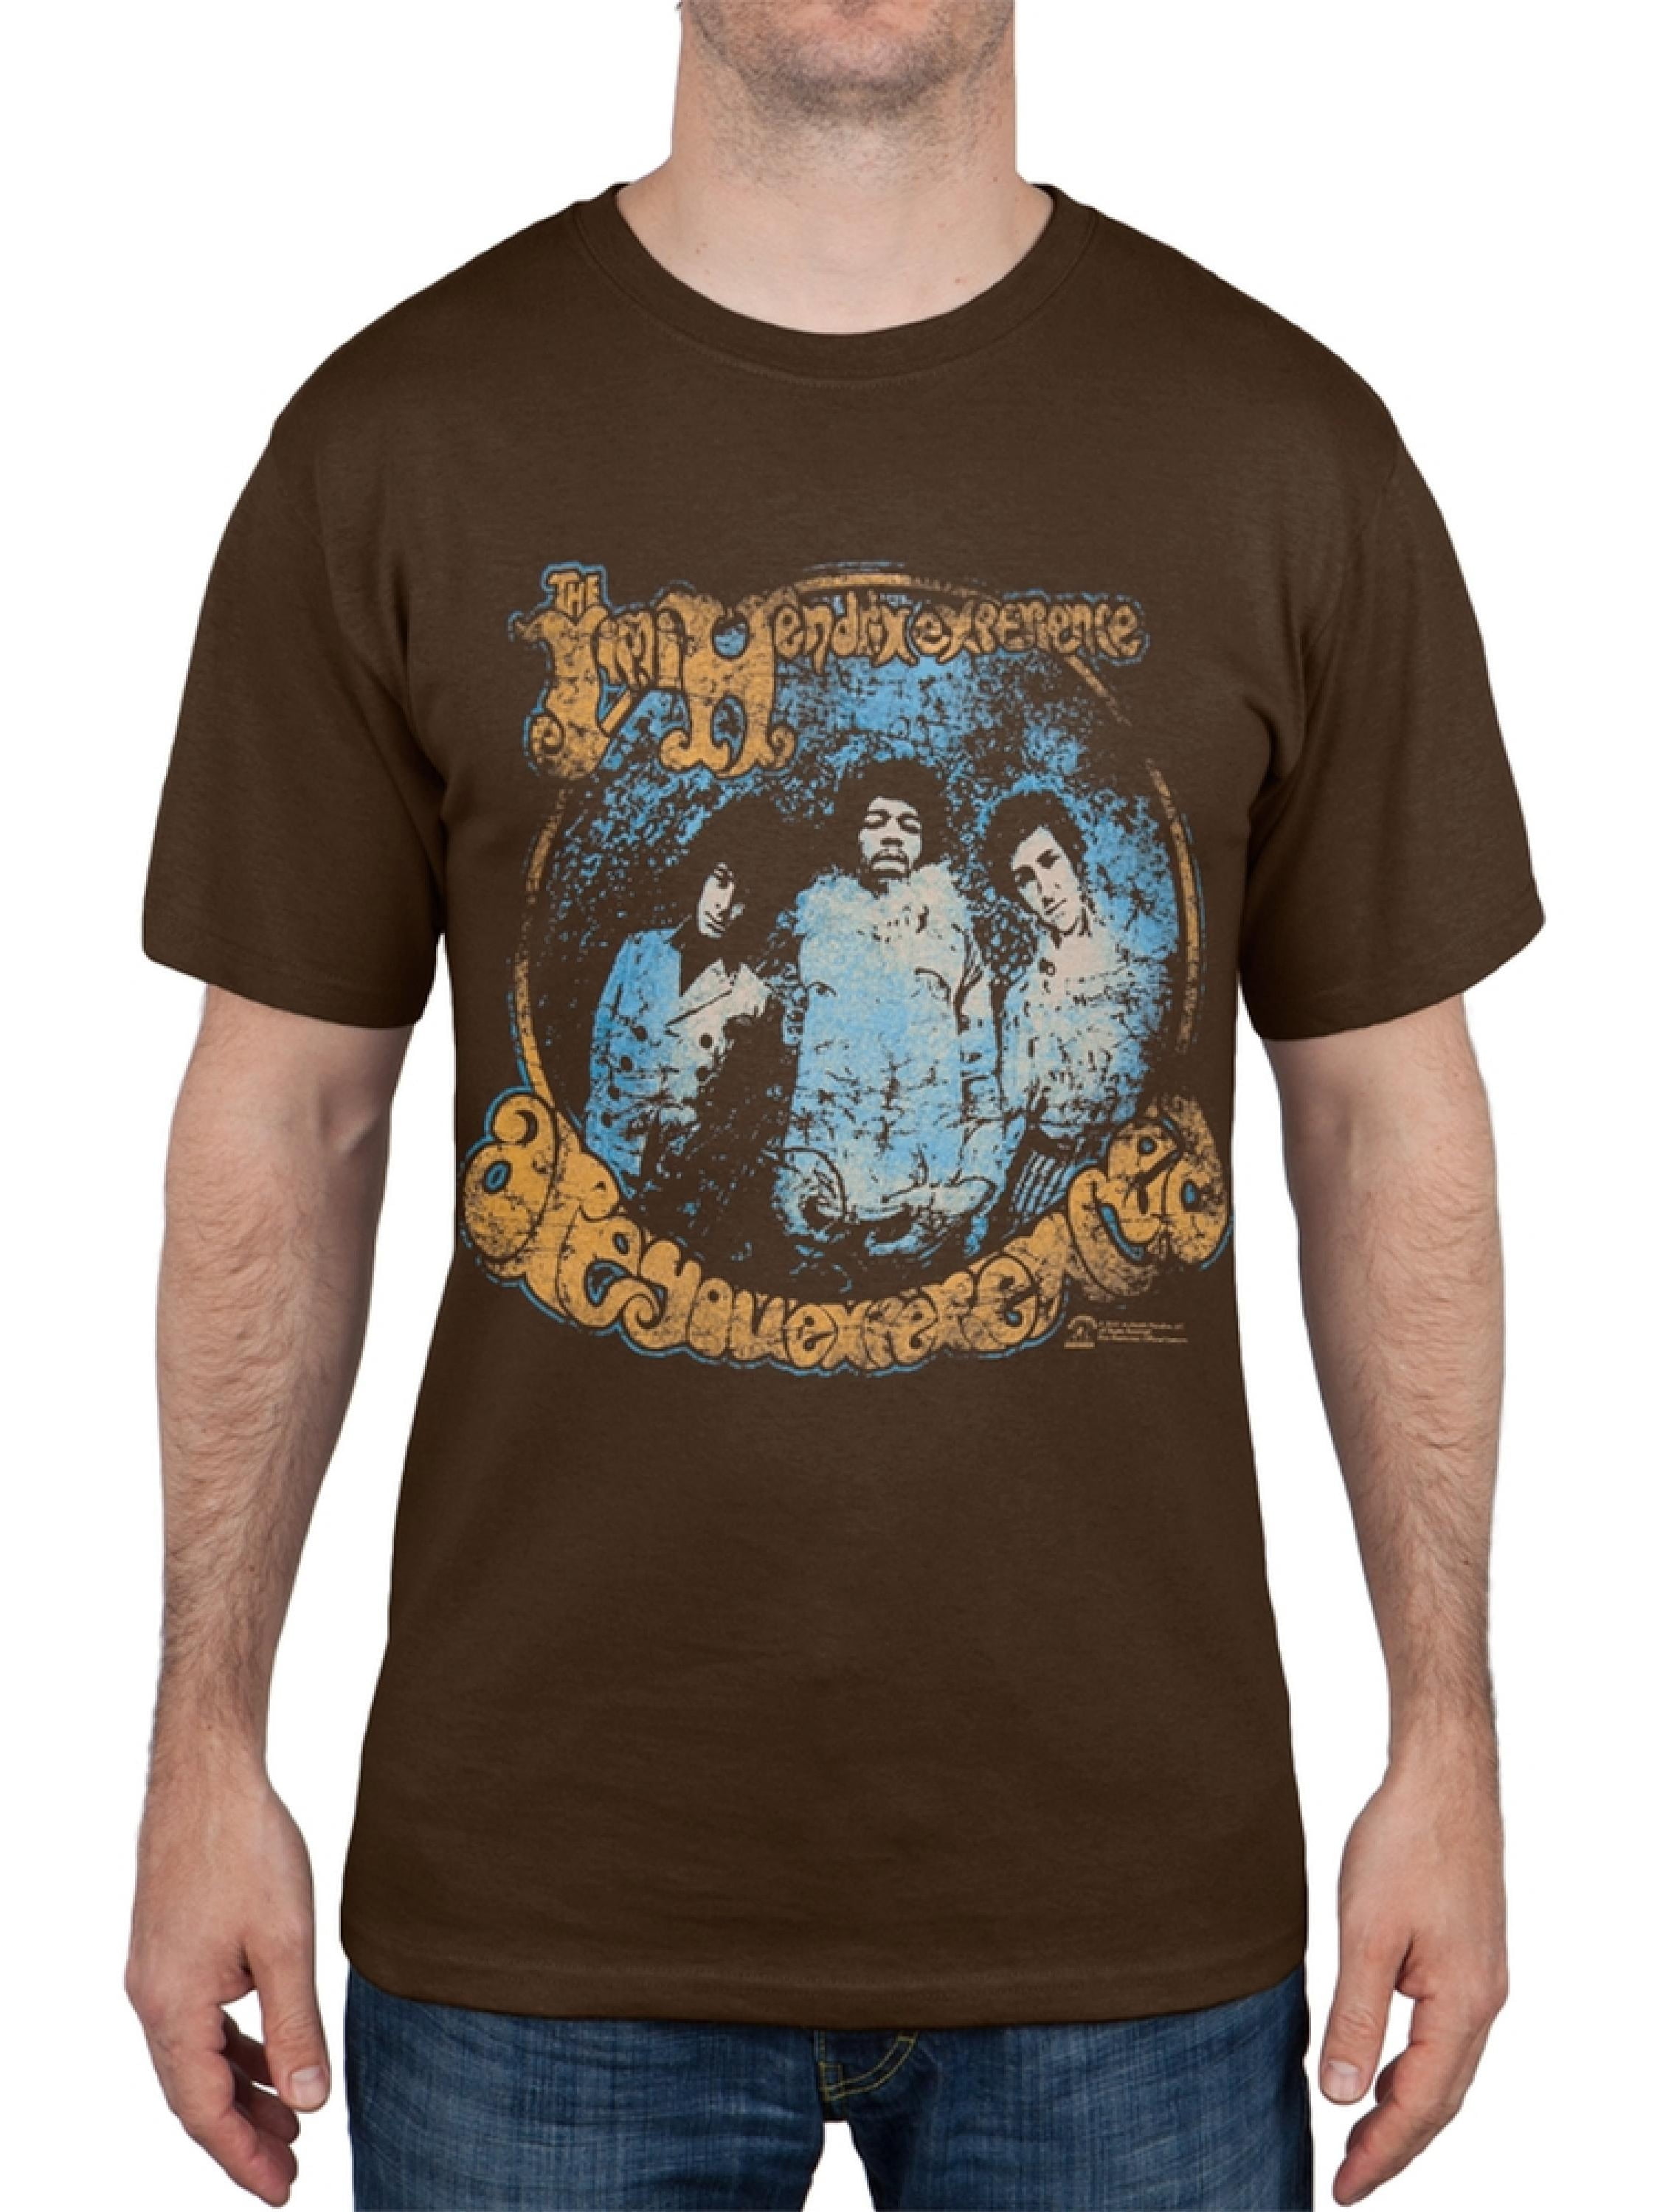 Jimi Hendrix - Jimi Hendrix - Experience Band Poster T-Shirt - 2X-Large ...